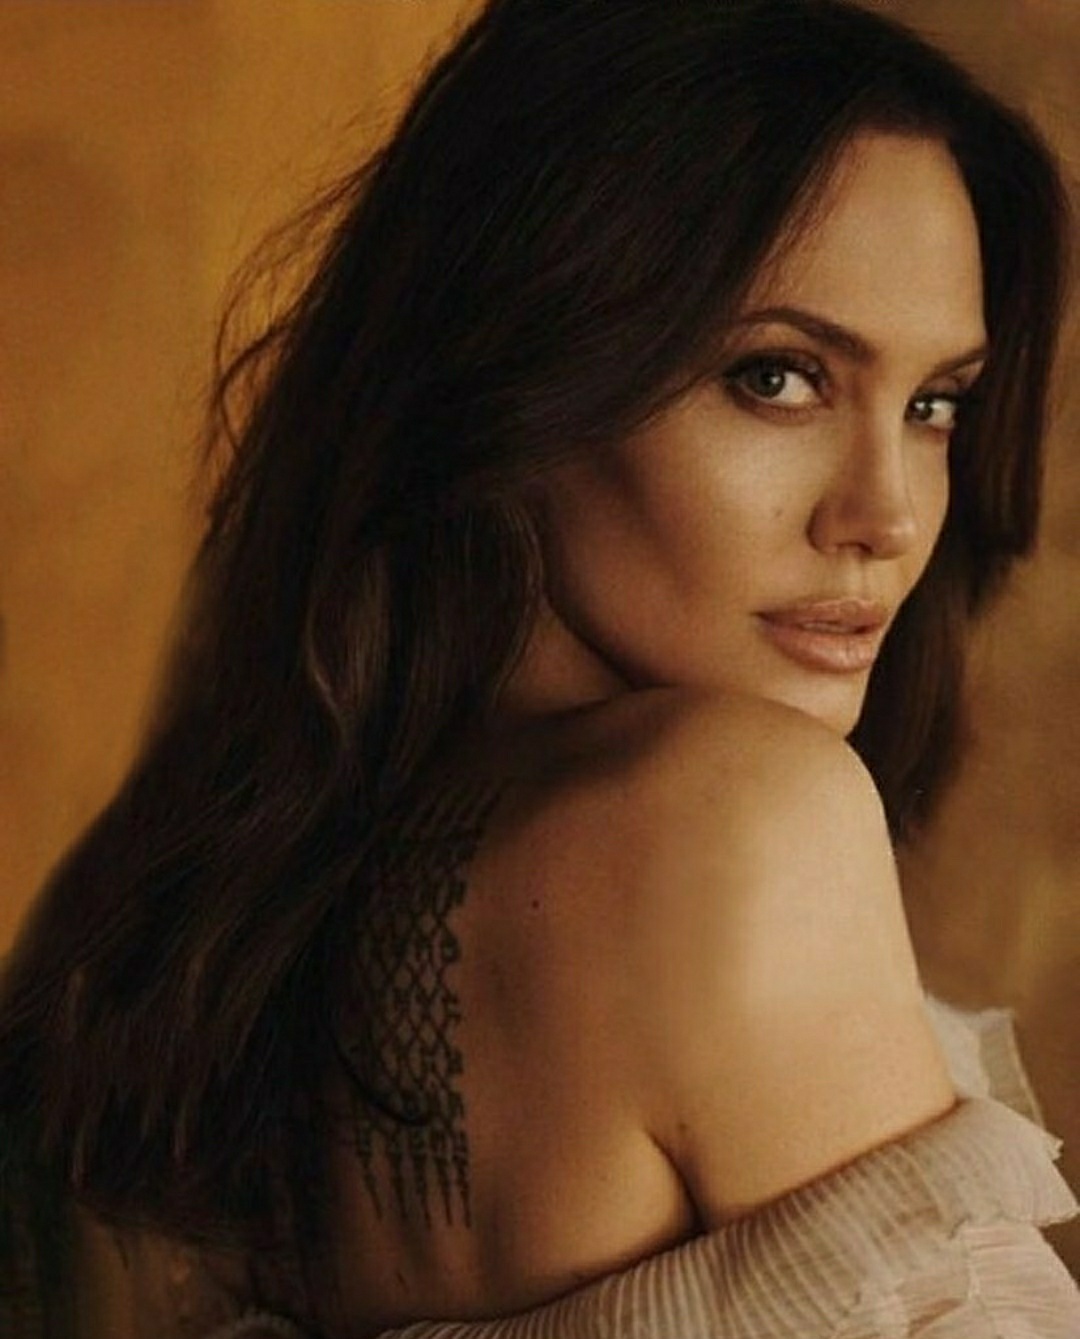 Неотразима: Анджелина Джоли снялась в нежной фотосессии
